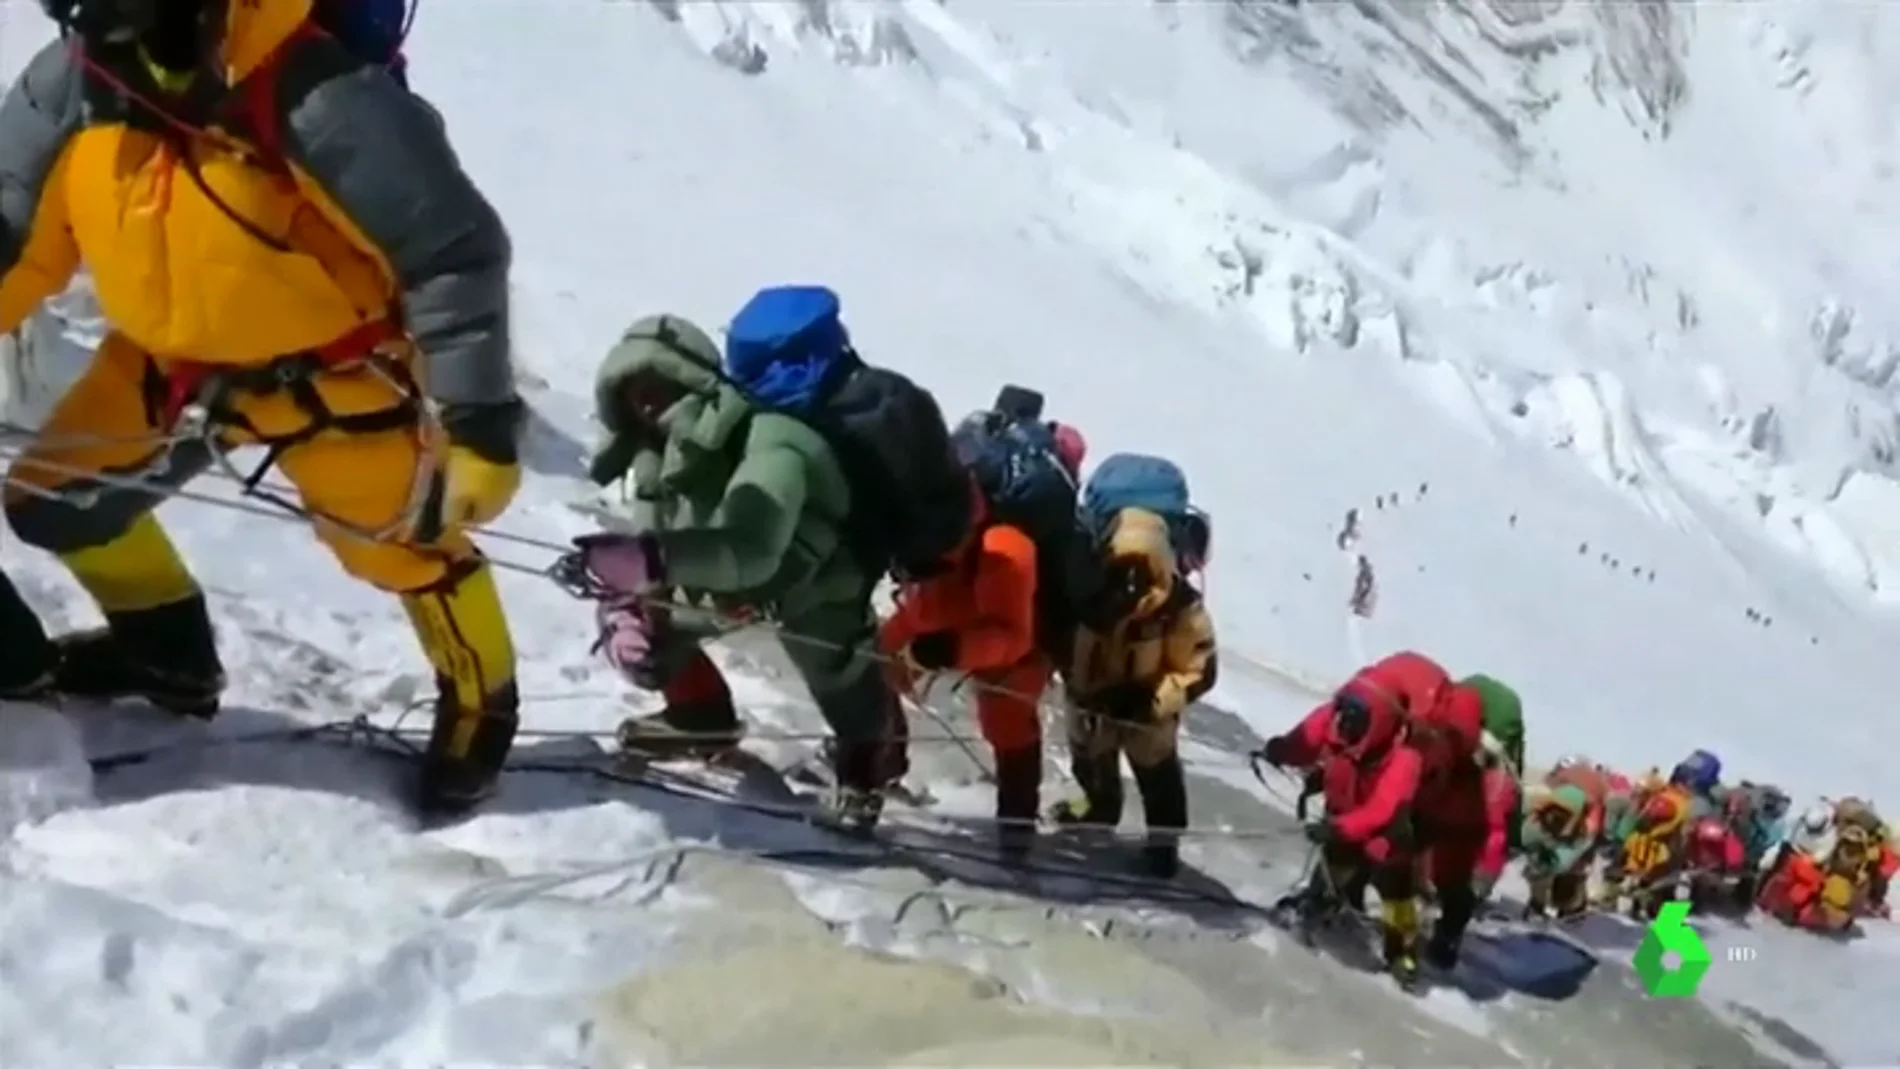 Aglomeraciones "peligrosísimas y espantosas" en el Everest: el alpinista Carlos Soria alerta sobre sus riesgos